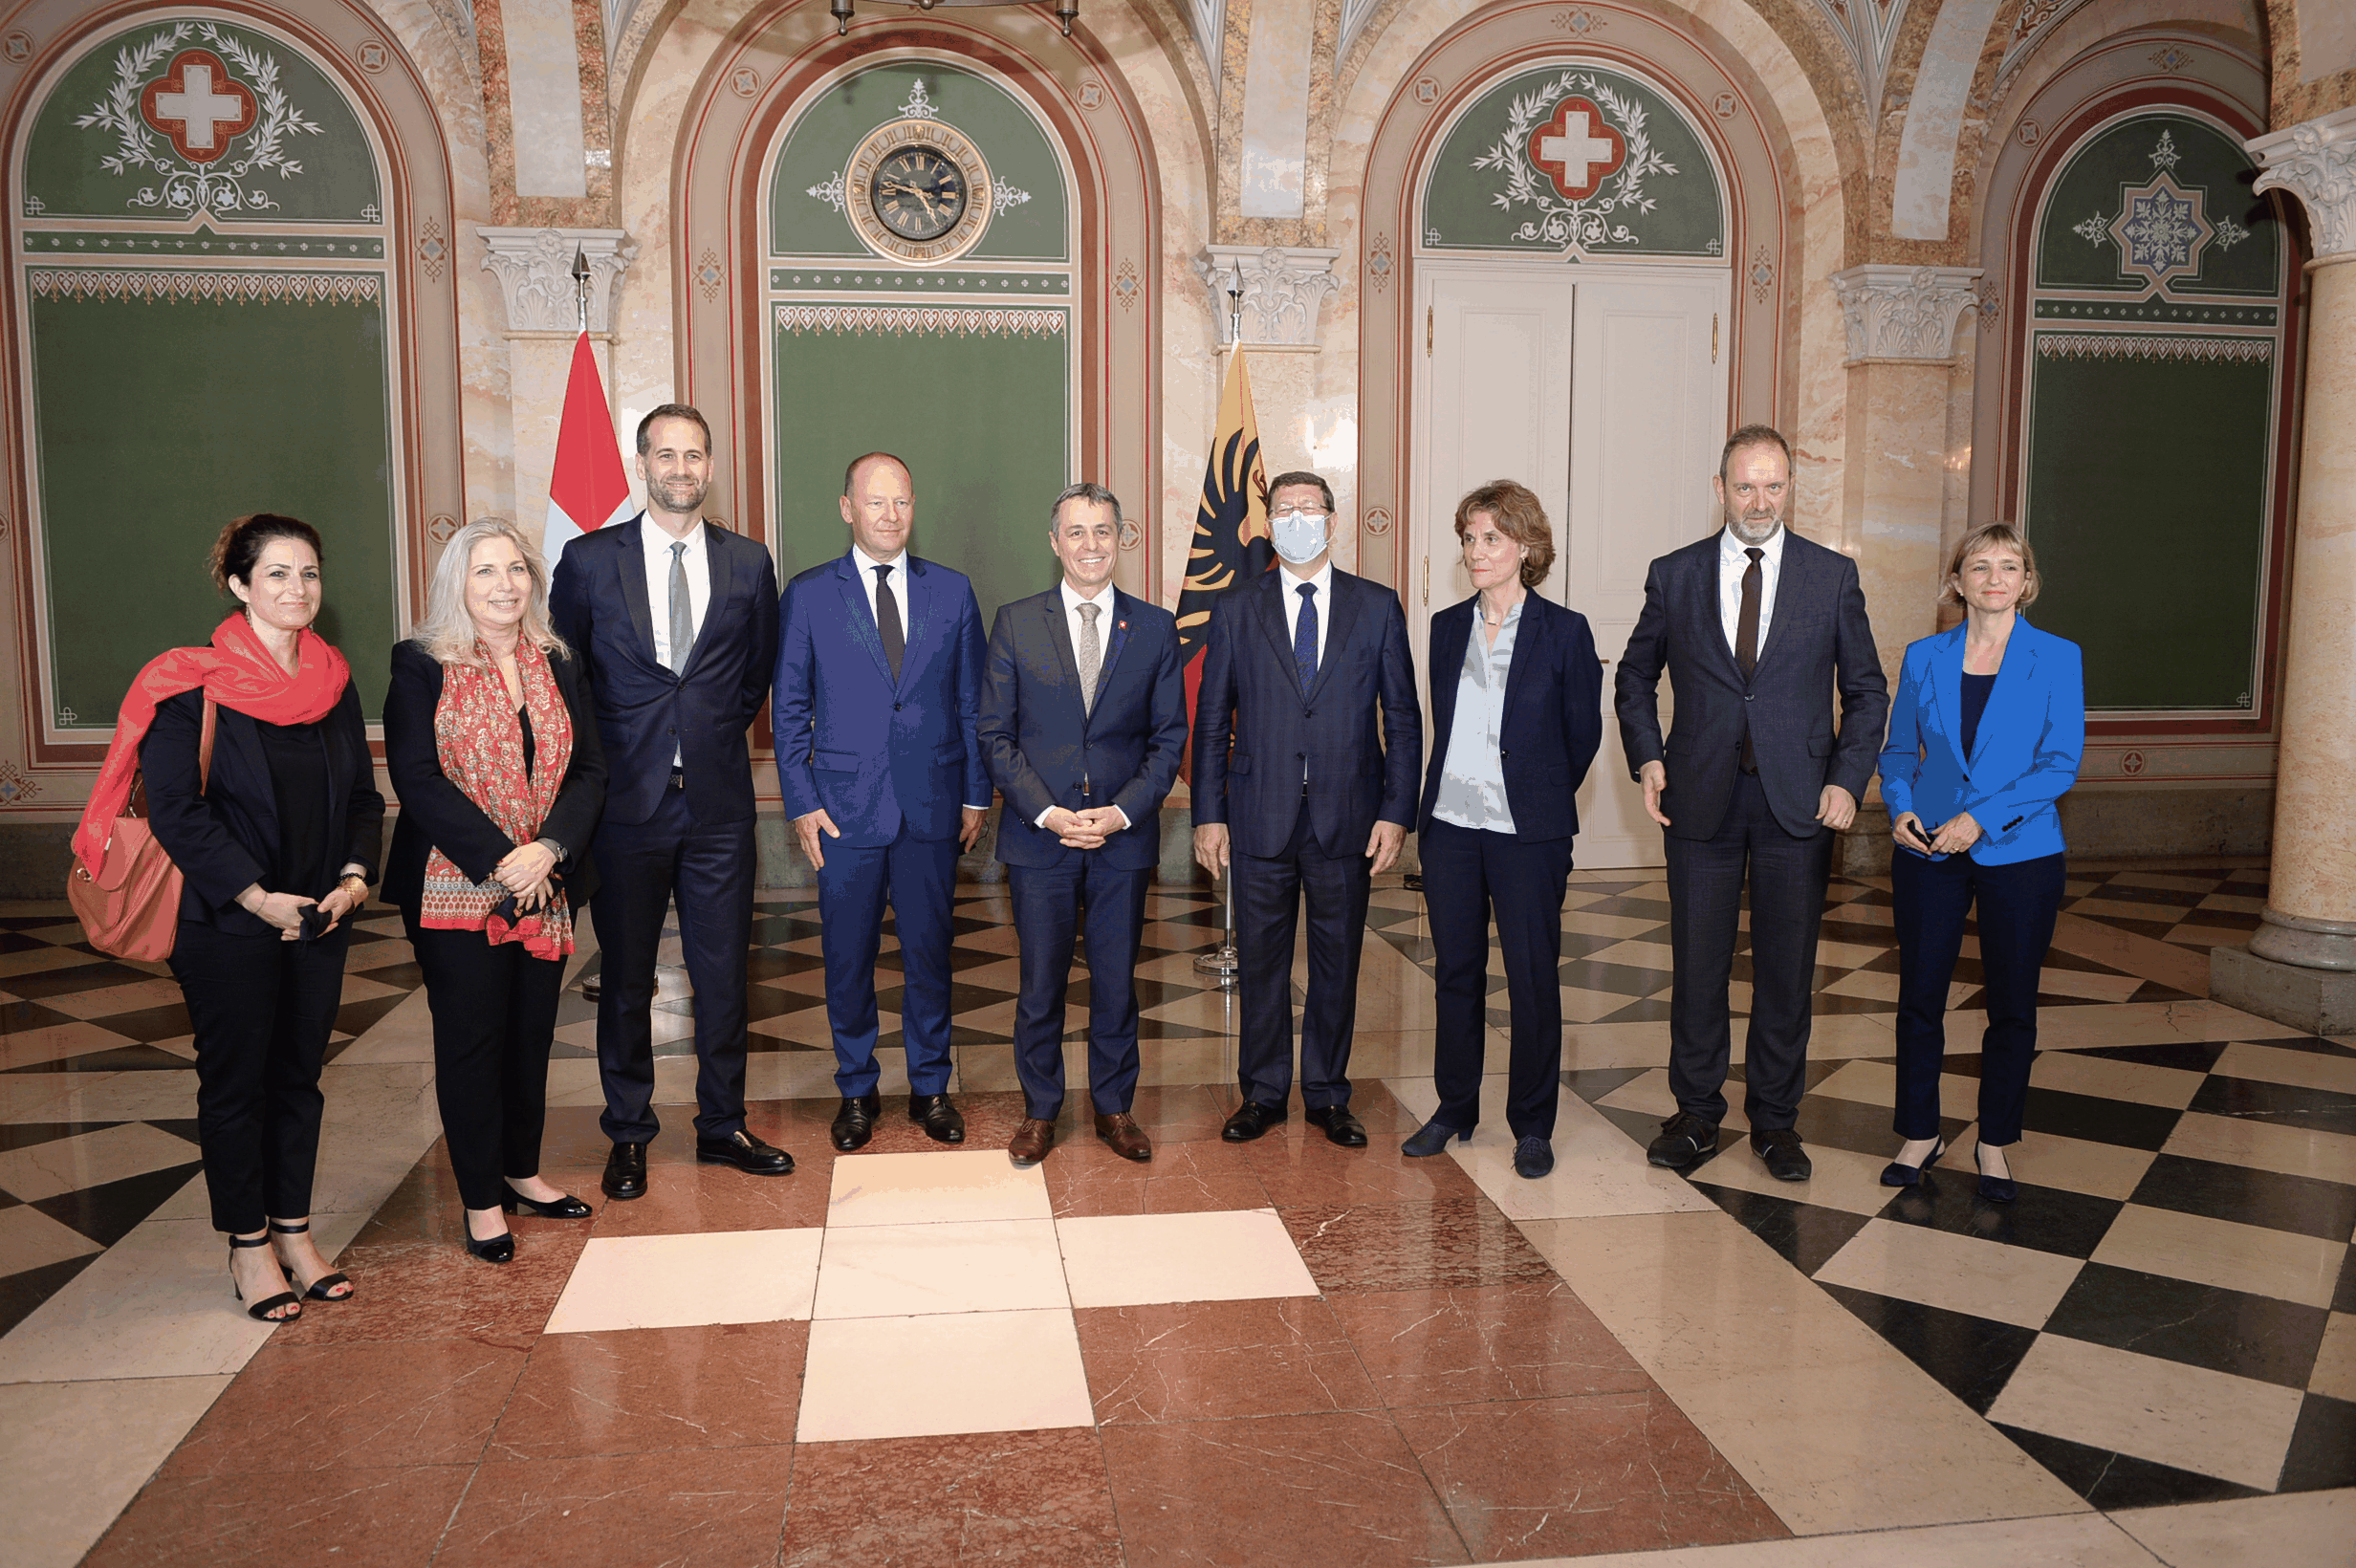 Les Genevois avec le conseiller fédéral Ignazio Cassis.